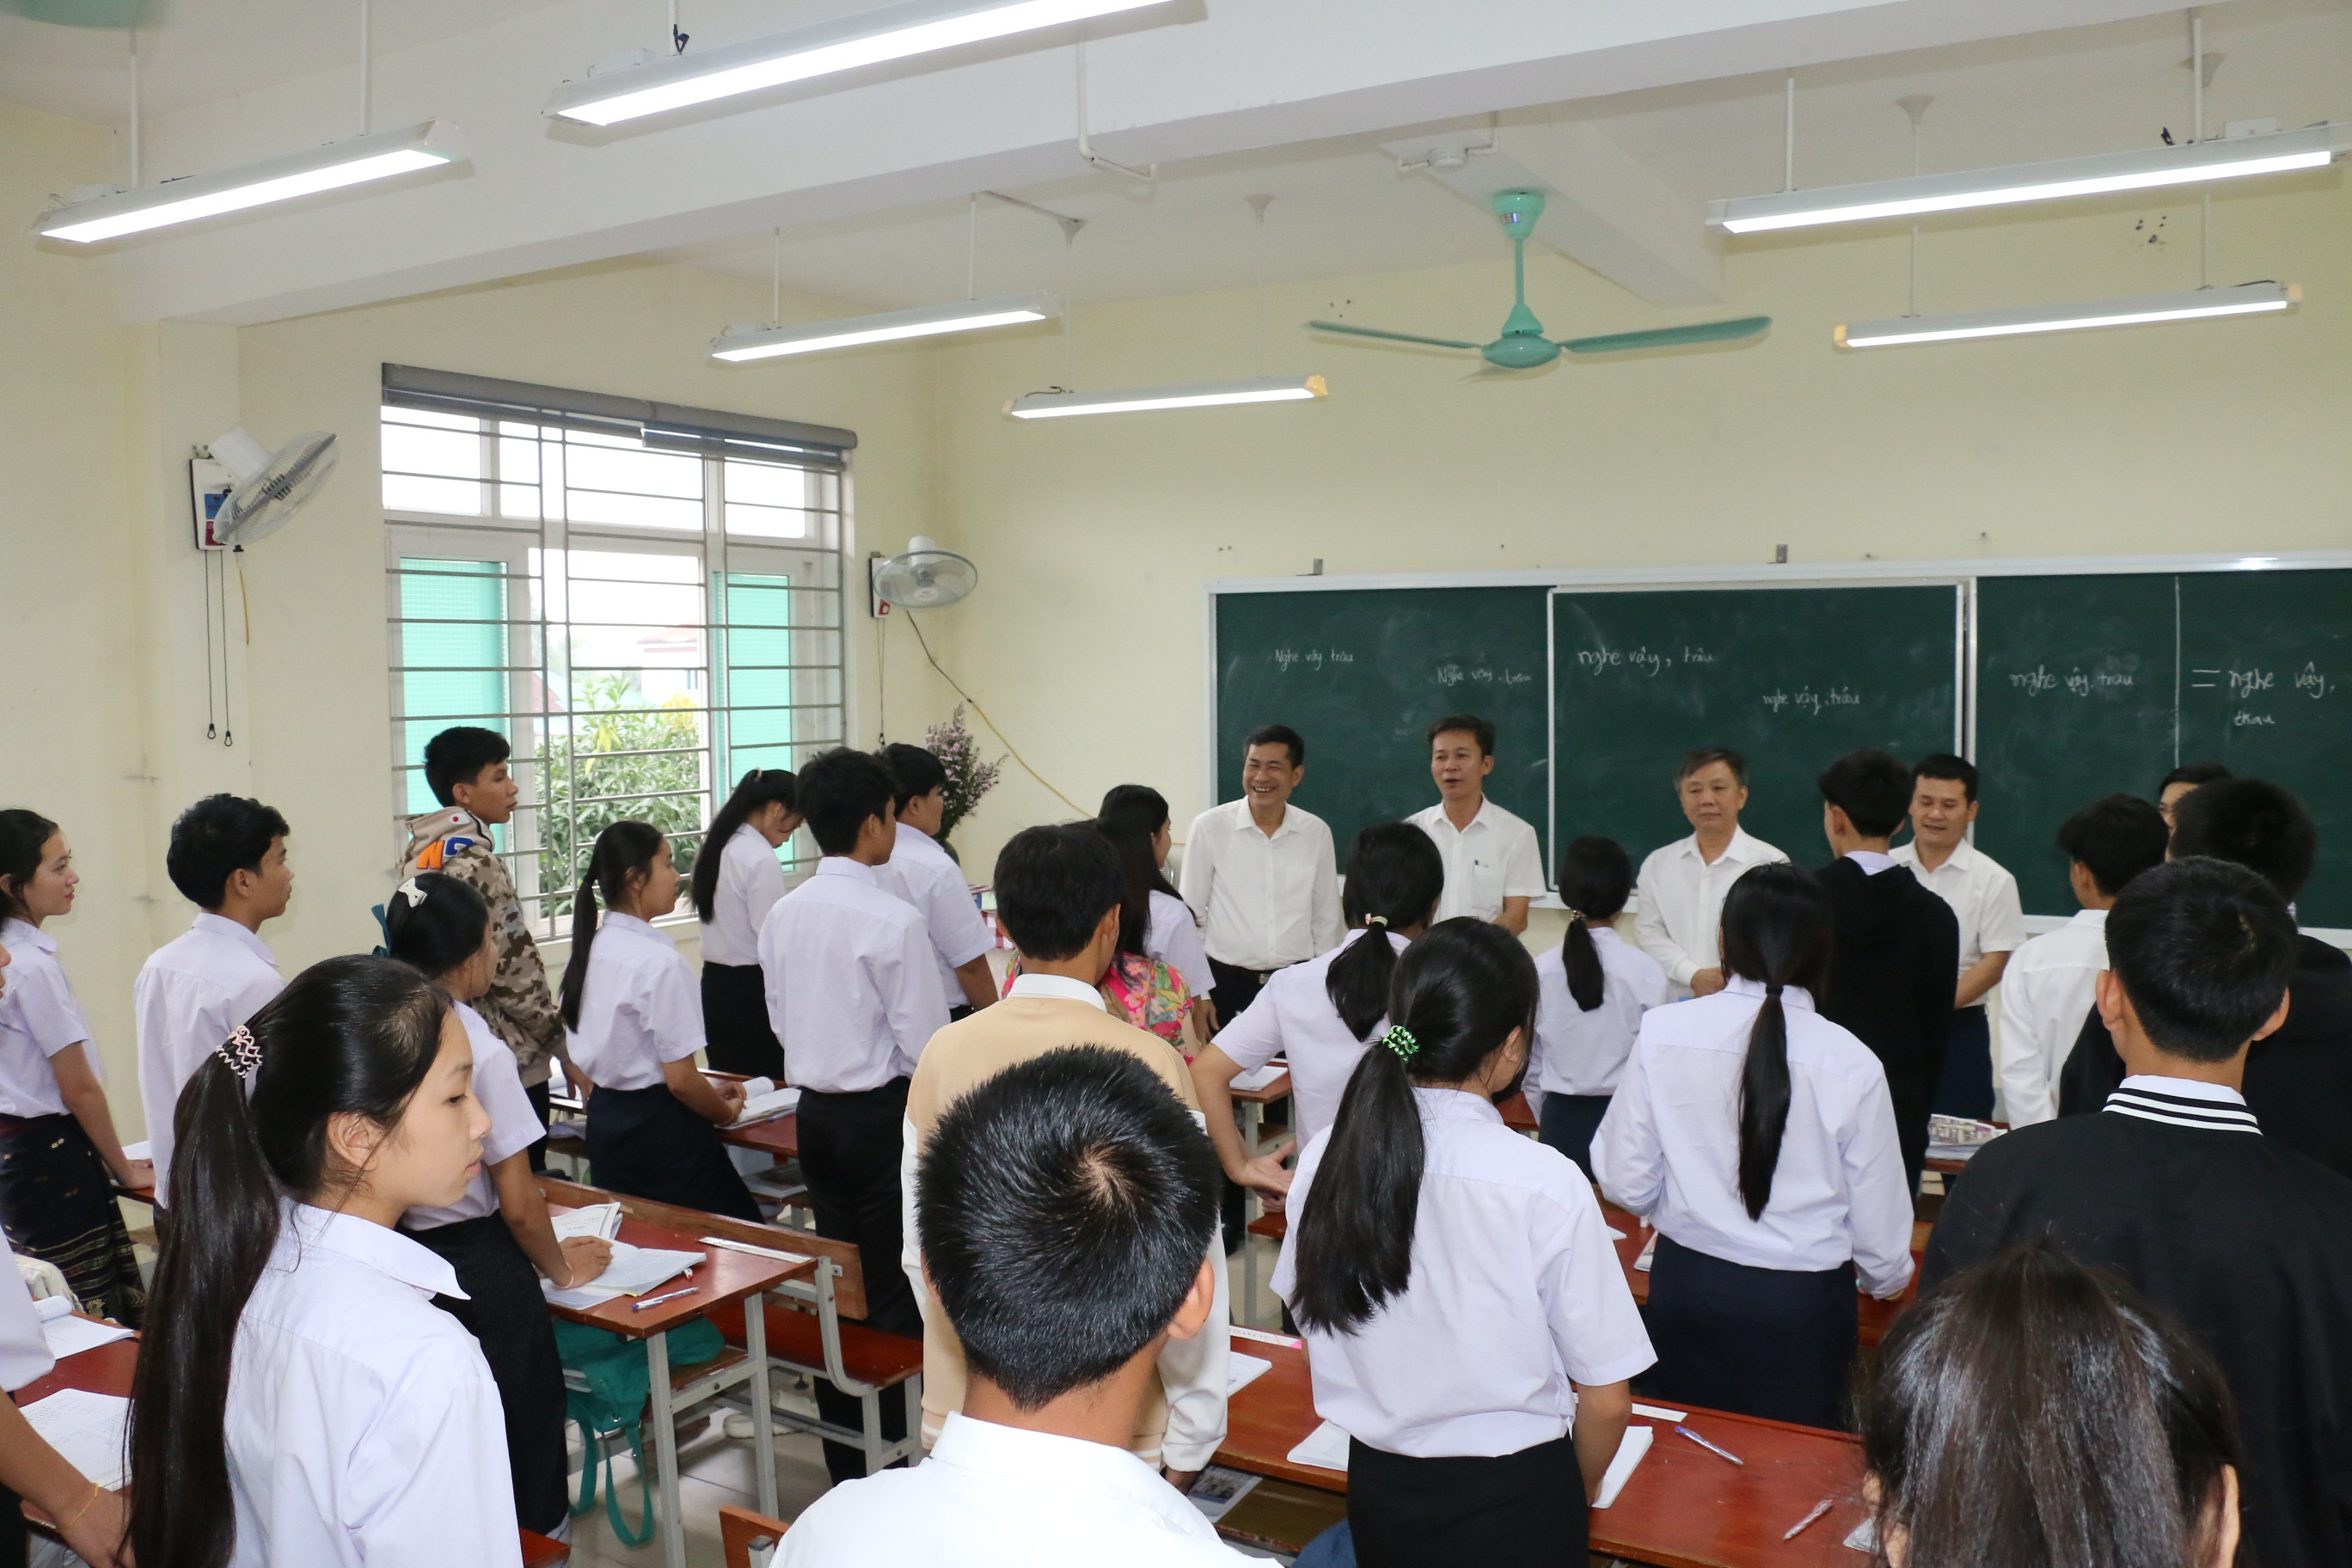 bna_Giám đốc Sở Giáo dục và Đào tạo trò chuyện với các lưu học sinh Lào.JPG